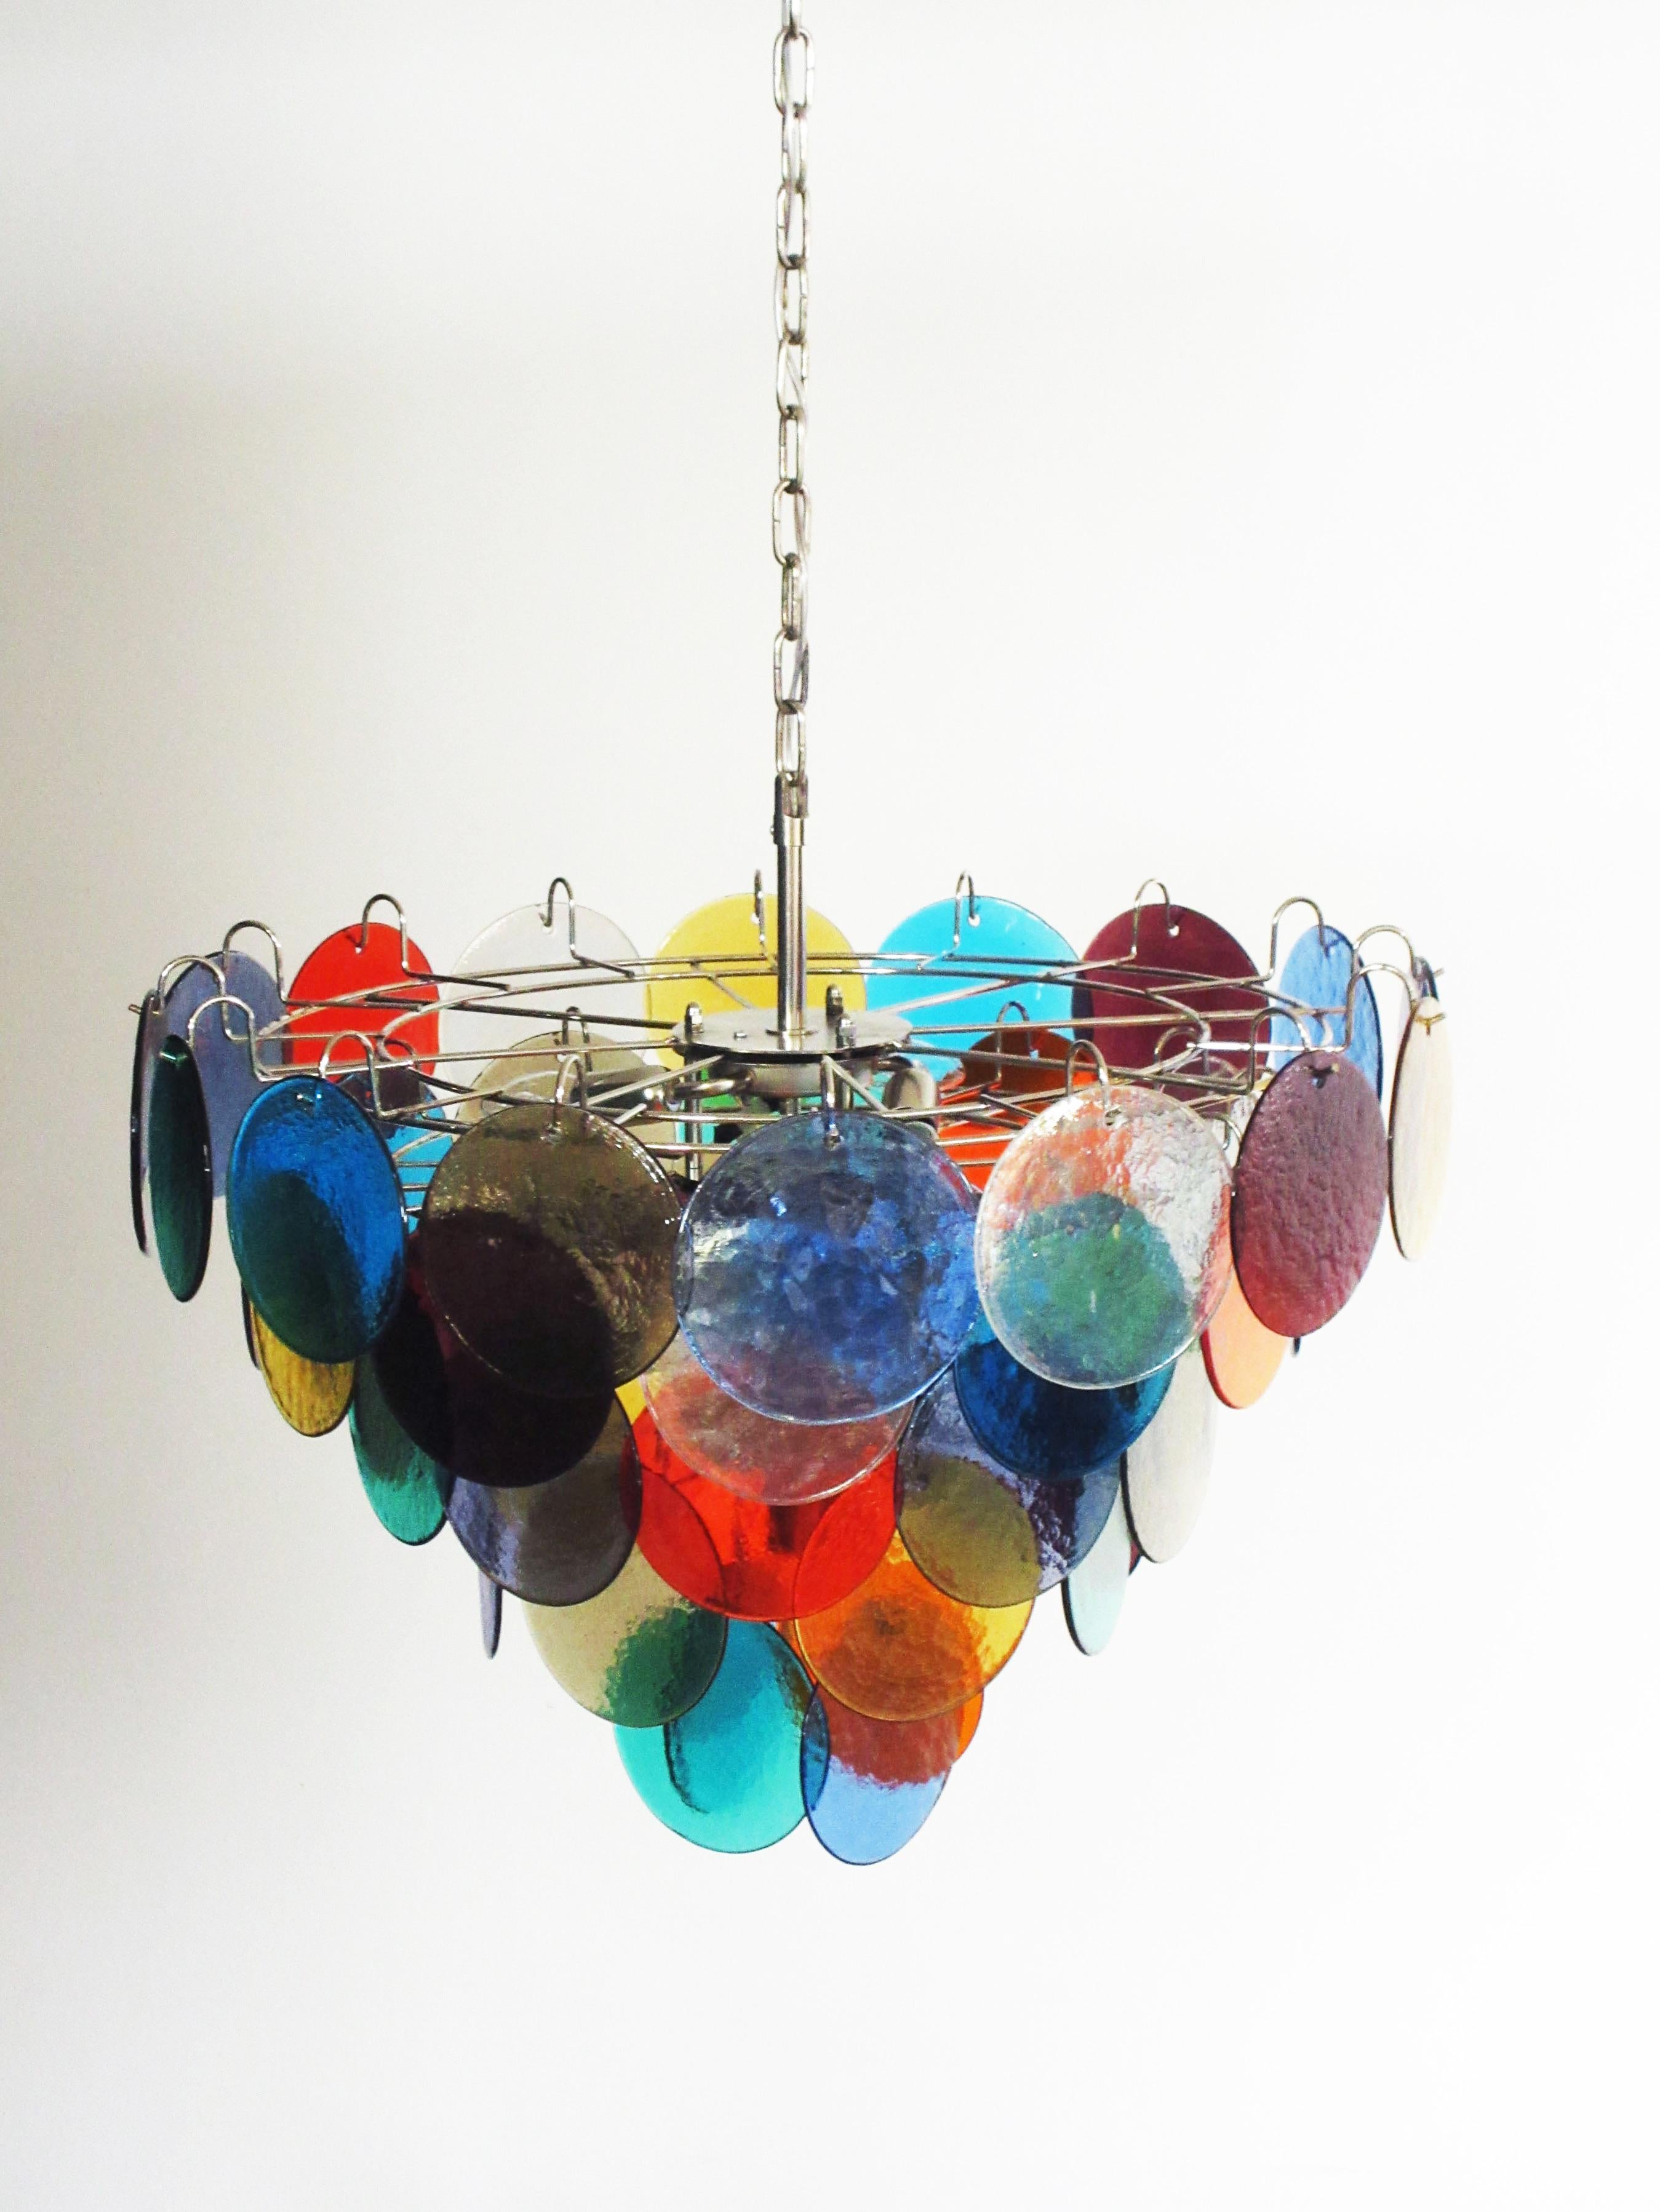 Chaque lustre comporte 50 disques en verre multicolore de Murano. Les verres sont désormais indisponibles, ils ont la particularité de refléter une multiplicité de couleurs, ce qui fait du lustre une véritable œuvre d'art. Cadre en métal